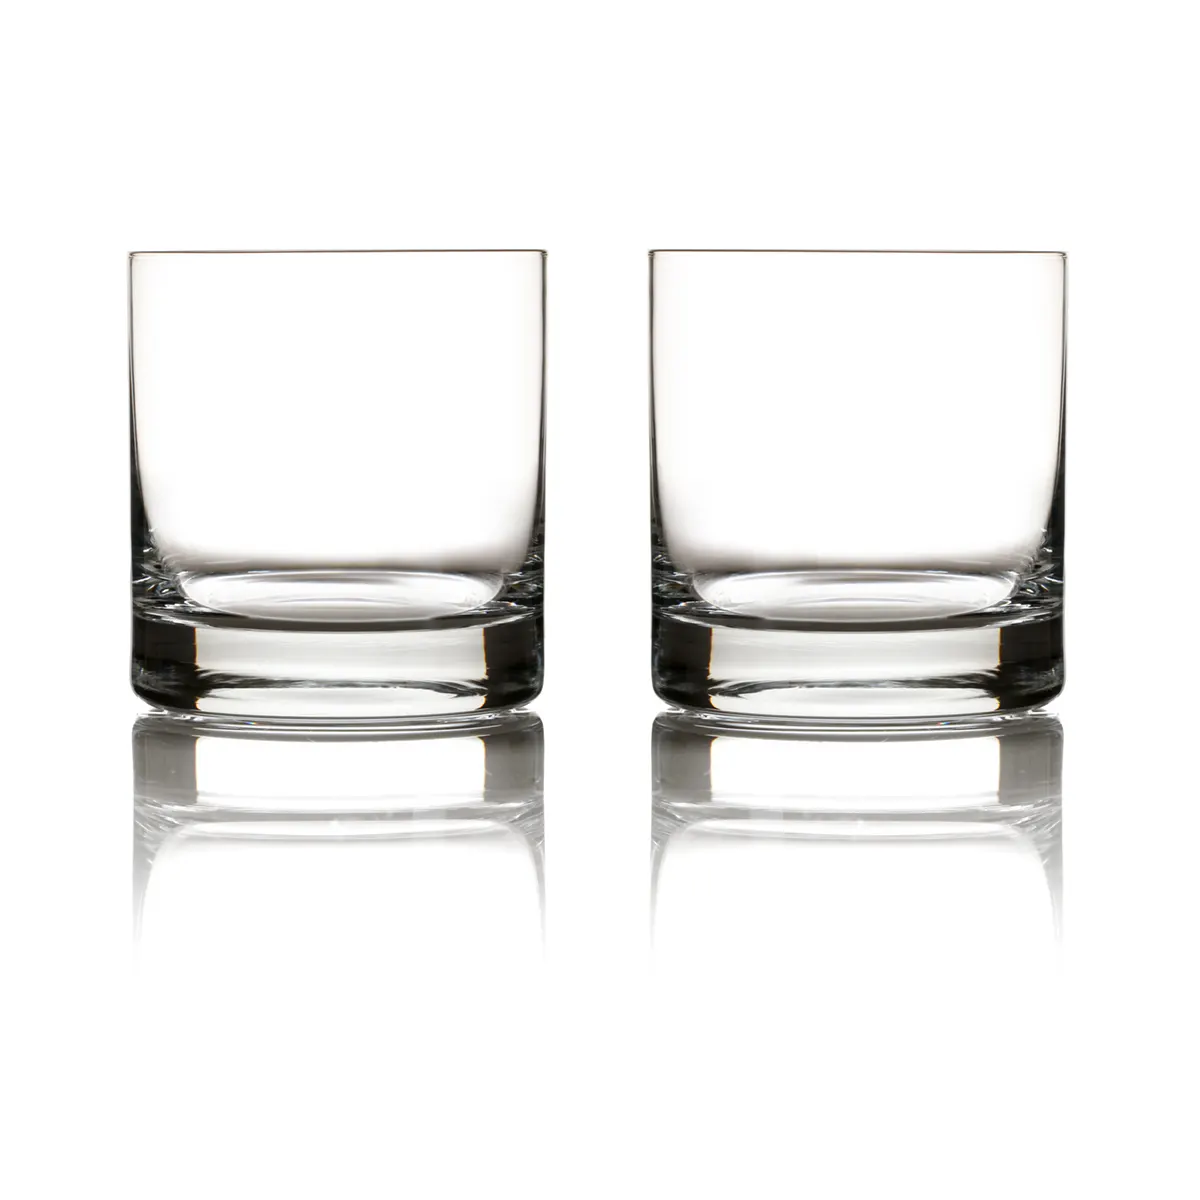 Eisch Whiskyglas Tasting Set - 2 Tumbler mit Pipette & Wasserglas in Geschenkröhre